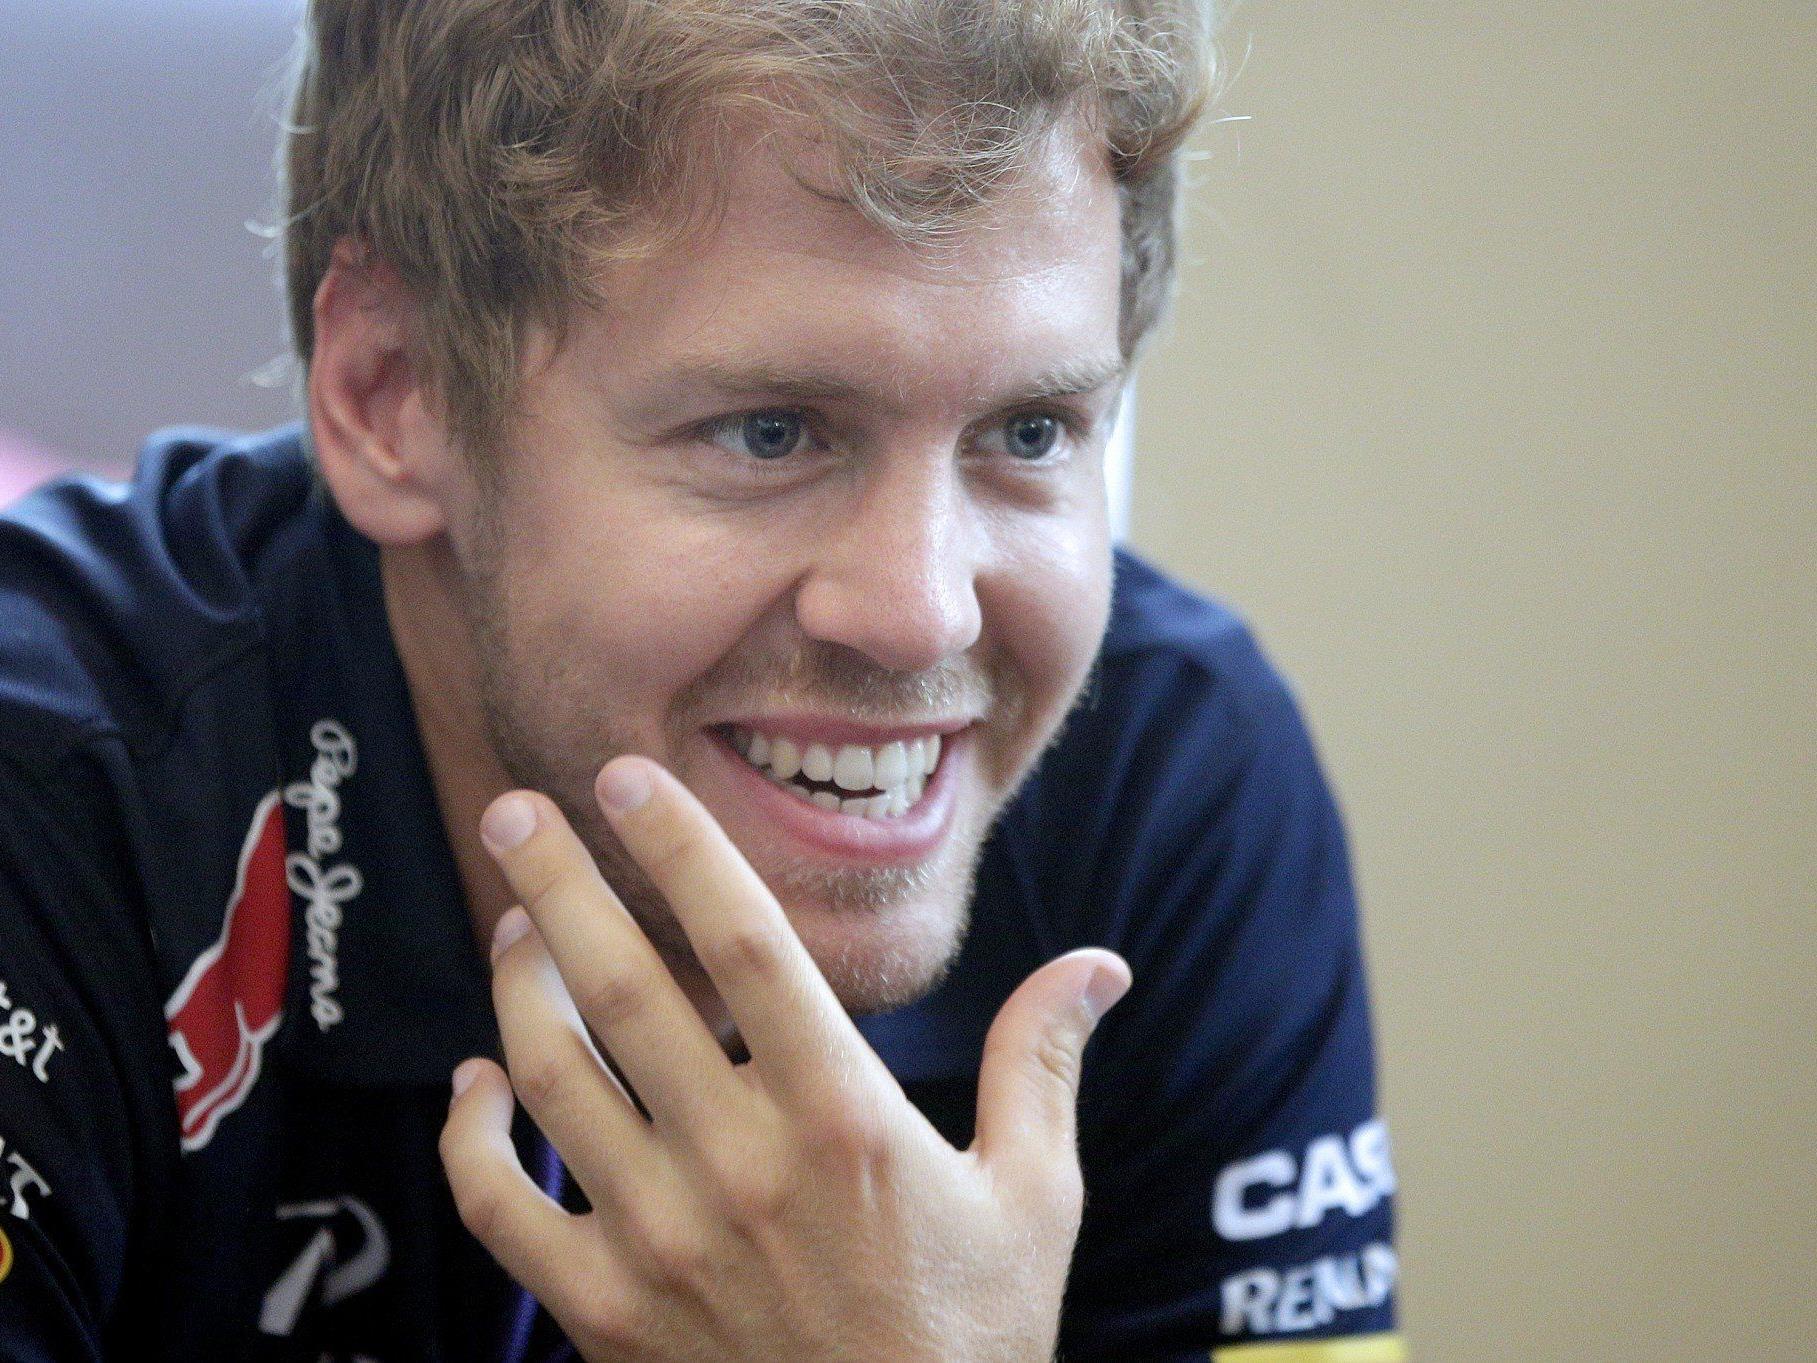 Weltmeister Sebastian Vettel begeisterte zusammen mit seinem Teamkollegen Ricciardo tausende Fans in Wien.